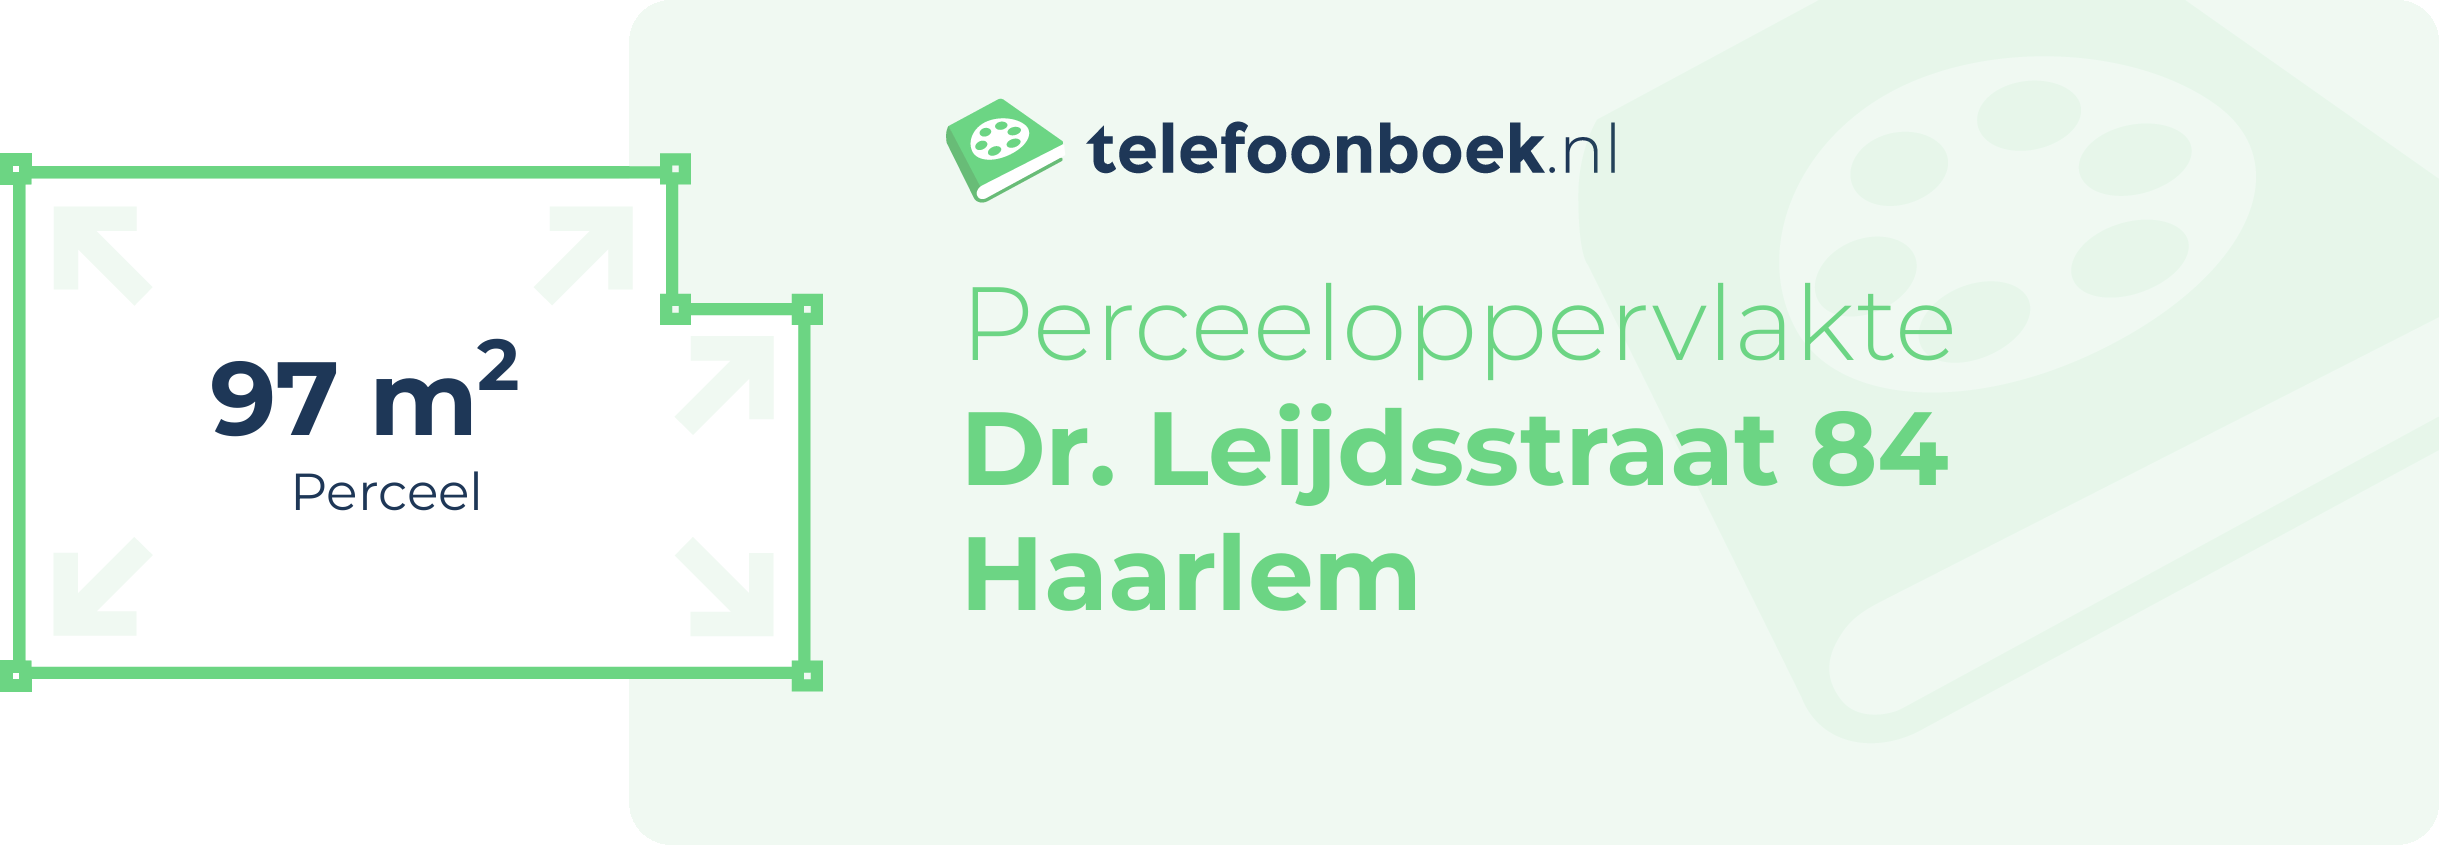 Perceeloppervlakte Dr. Leijdsstraat 84 Haarlem